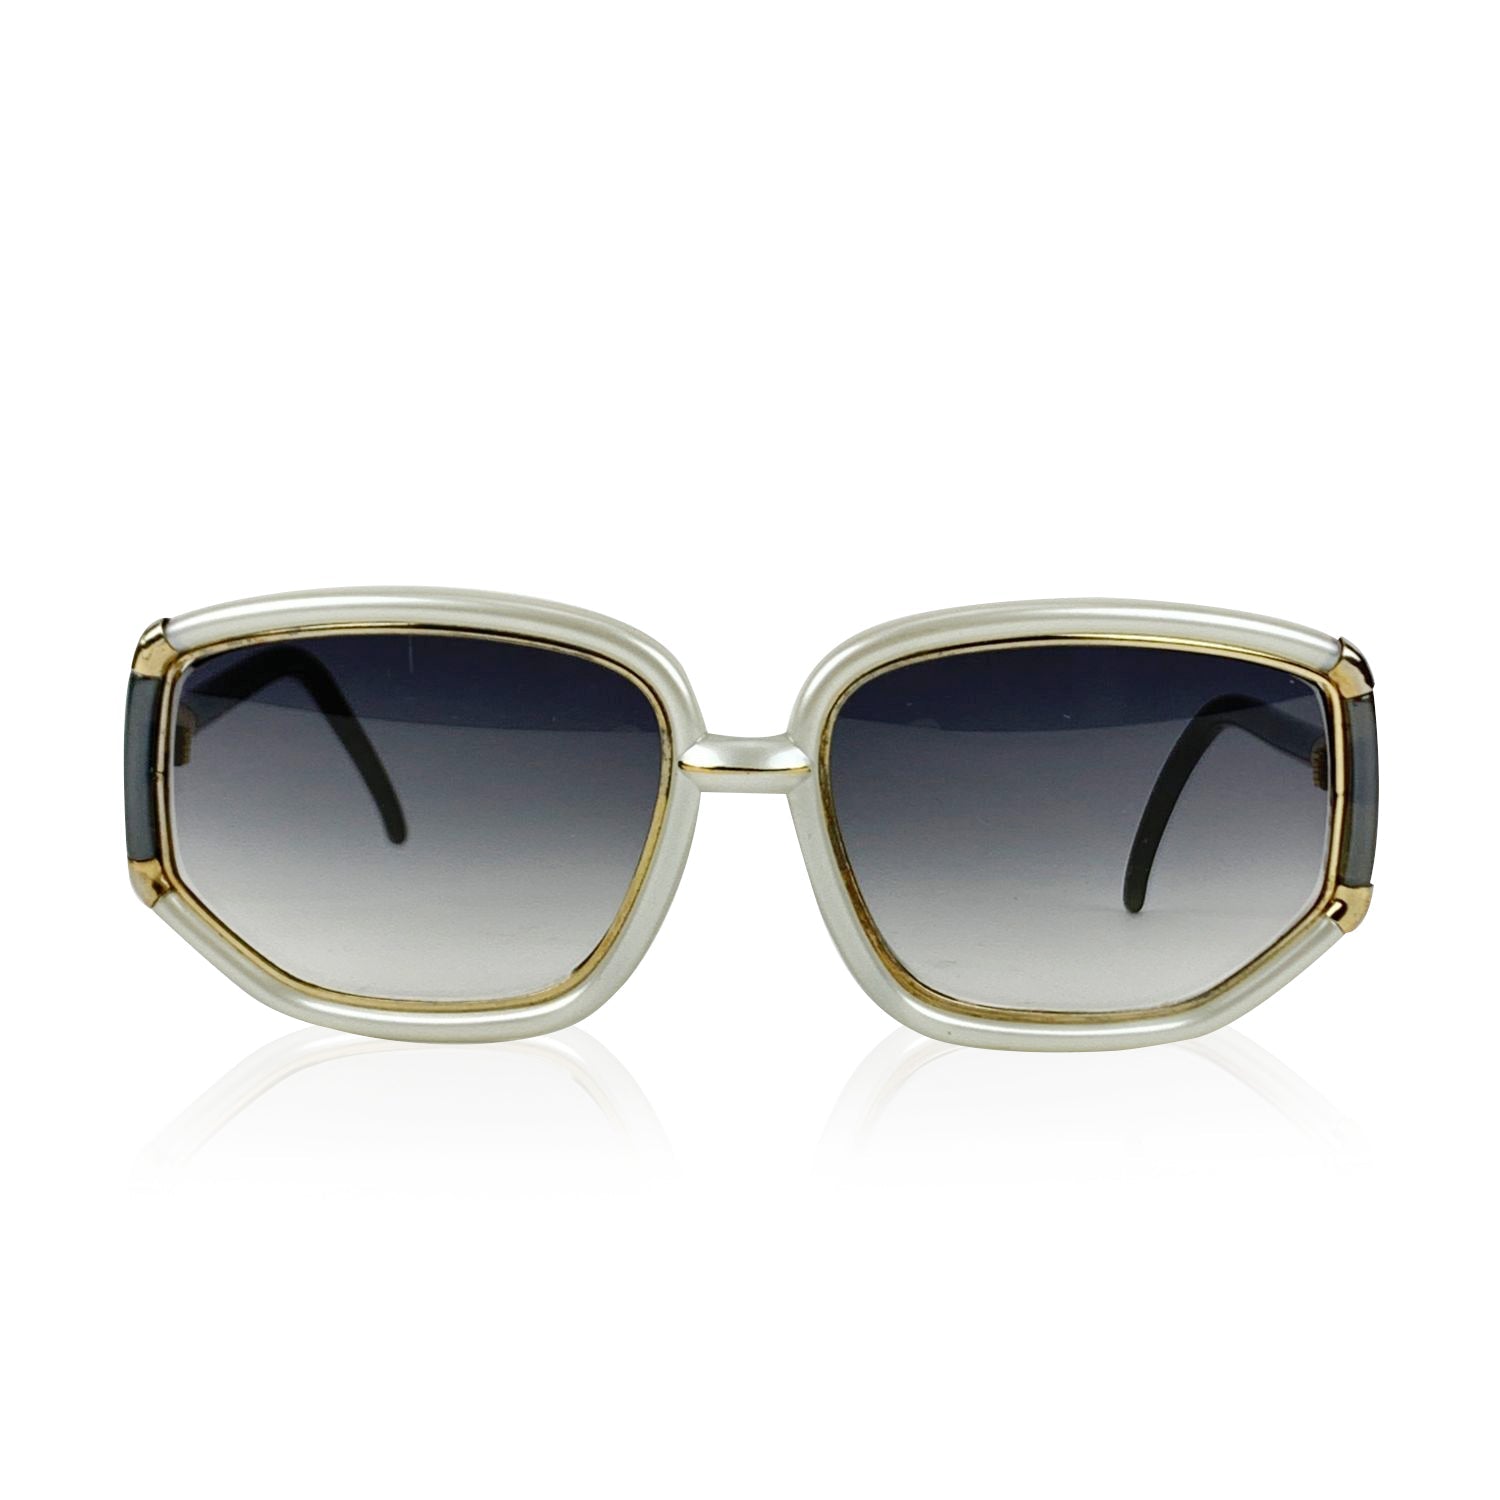 TED LAPIDUS Sunglasses -